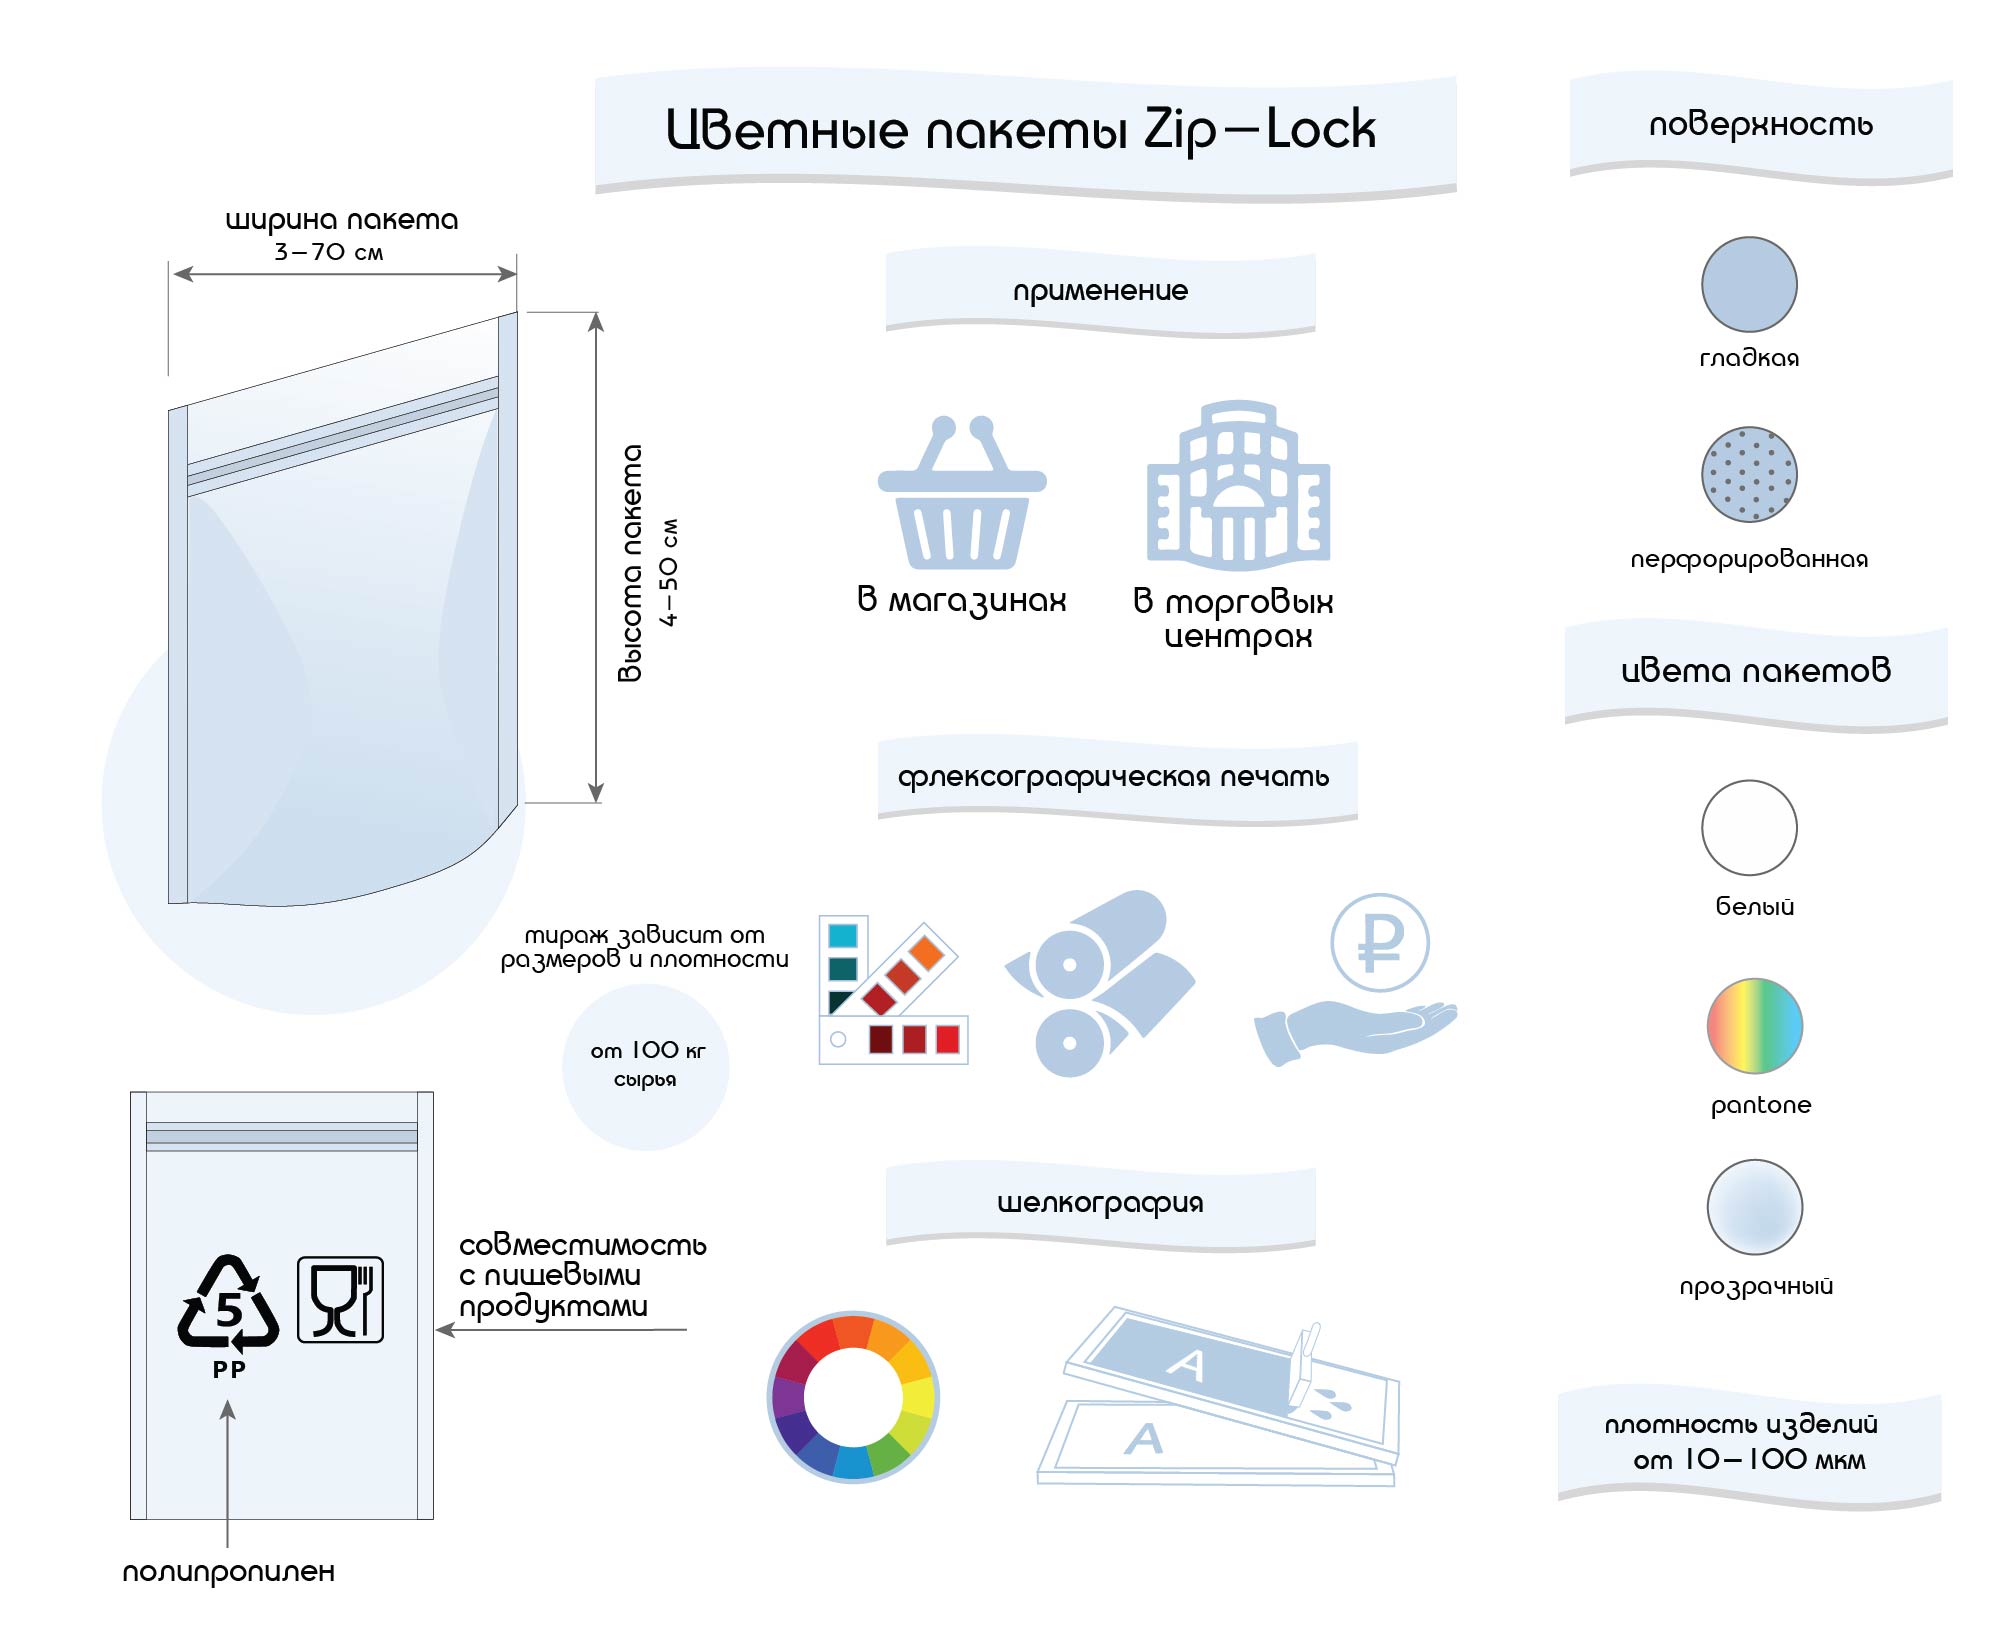 инфографика - цветные пакеты zip-Lock